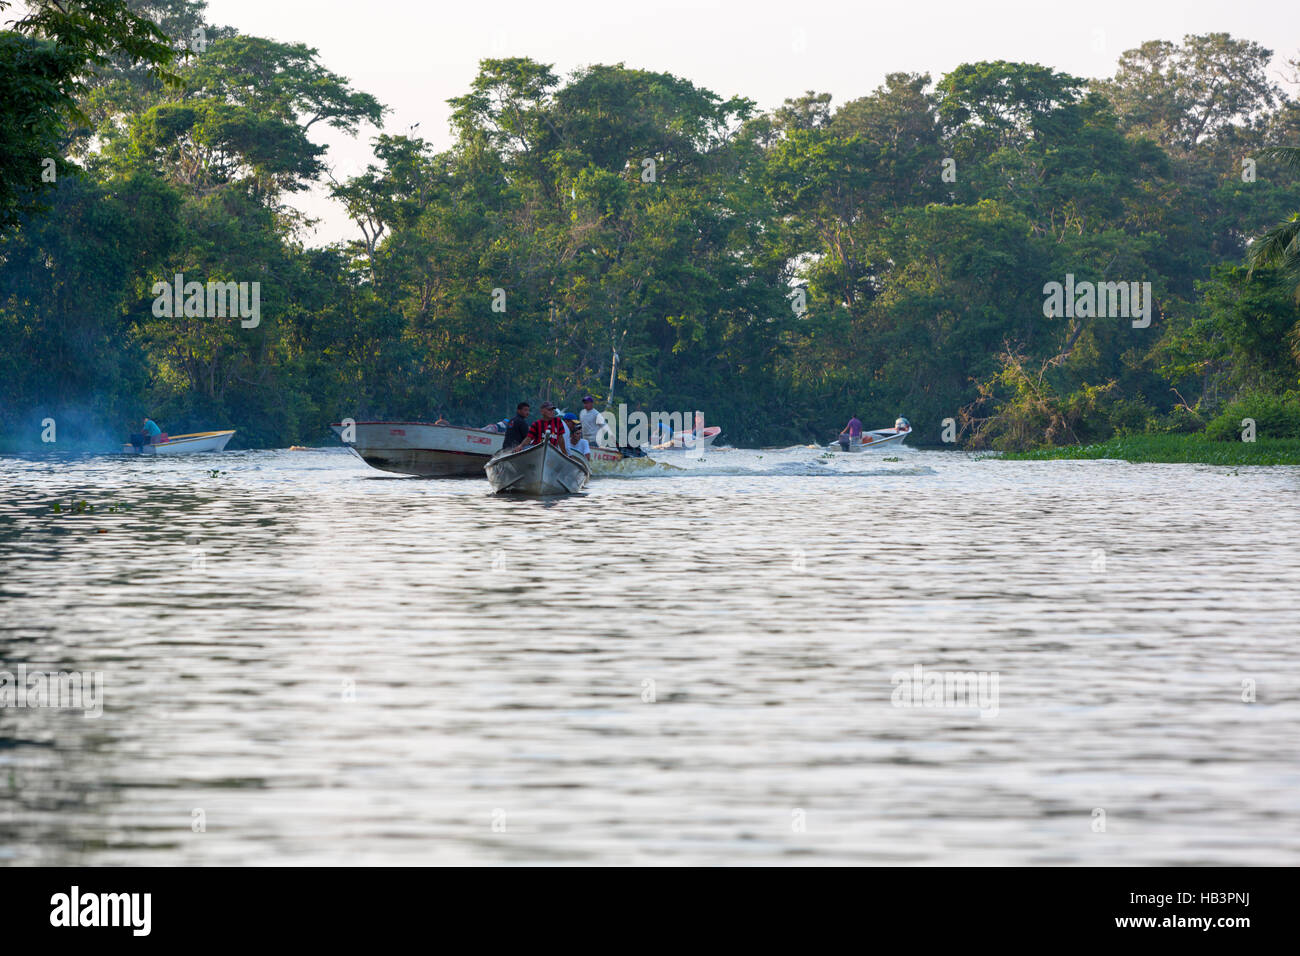 Bateaux de vitesse de croisière sur la rivière de Maracaibo, Venezuela Banque D'Images